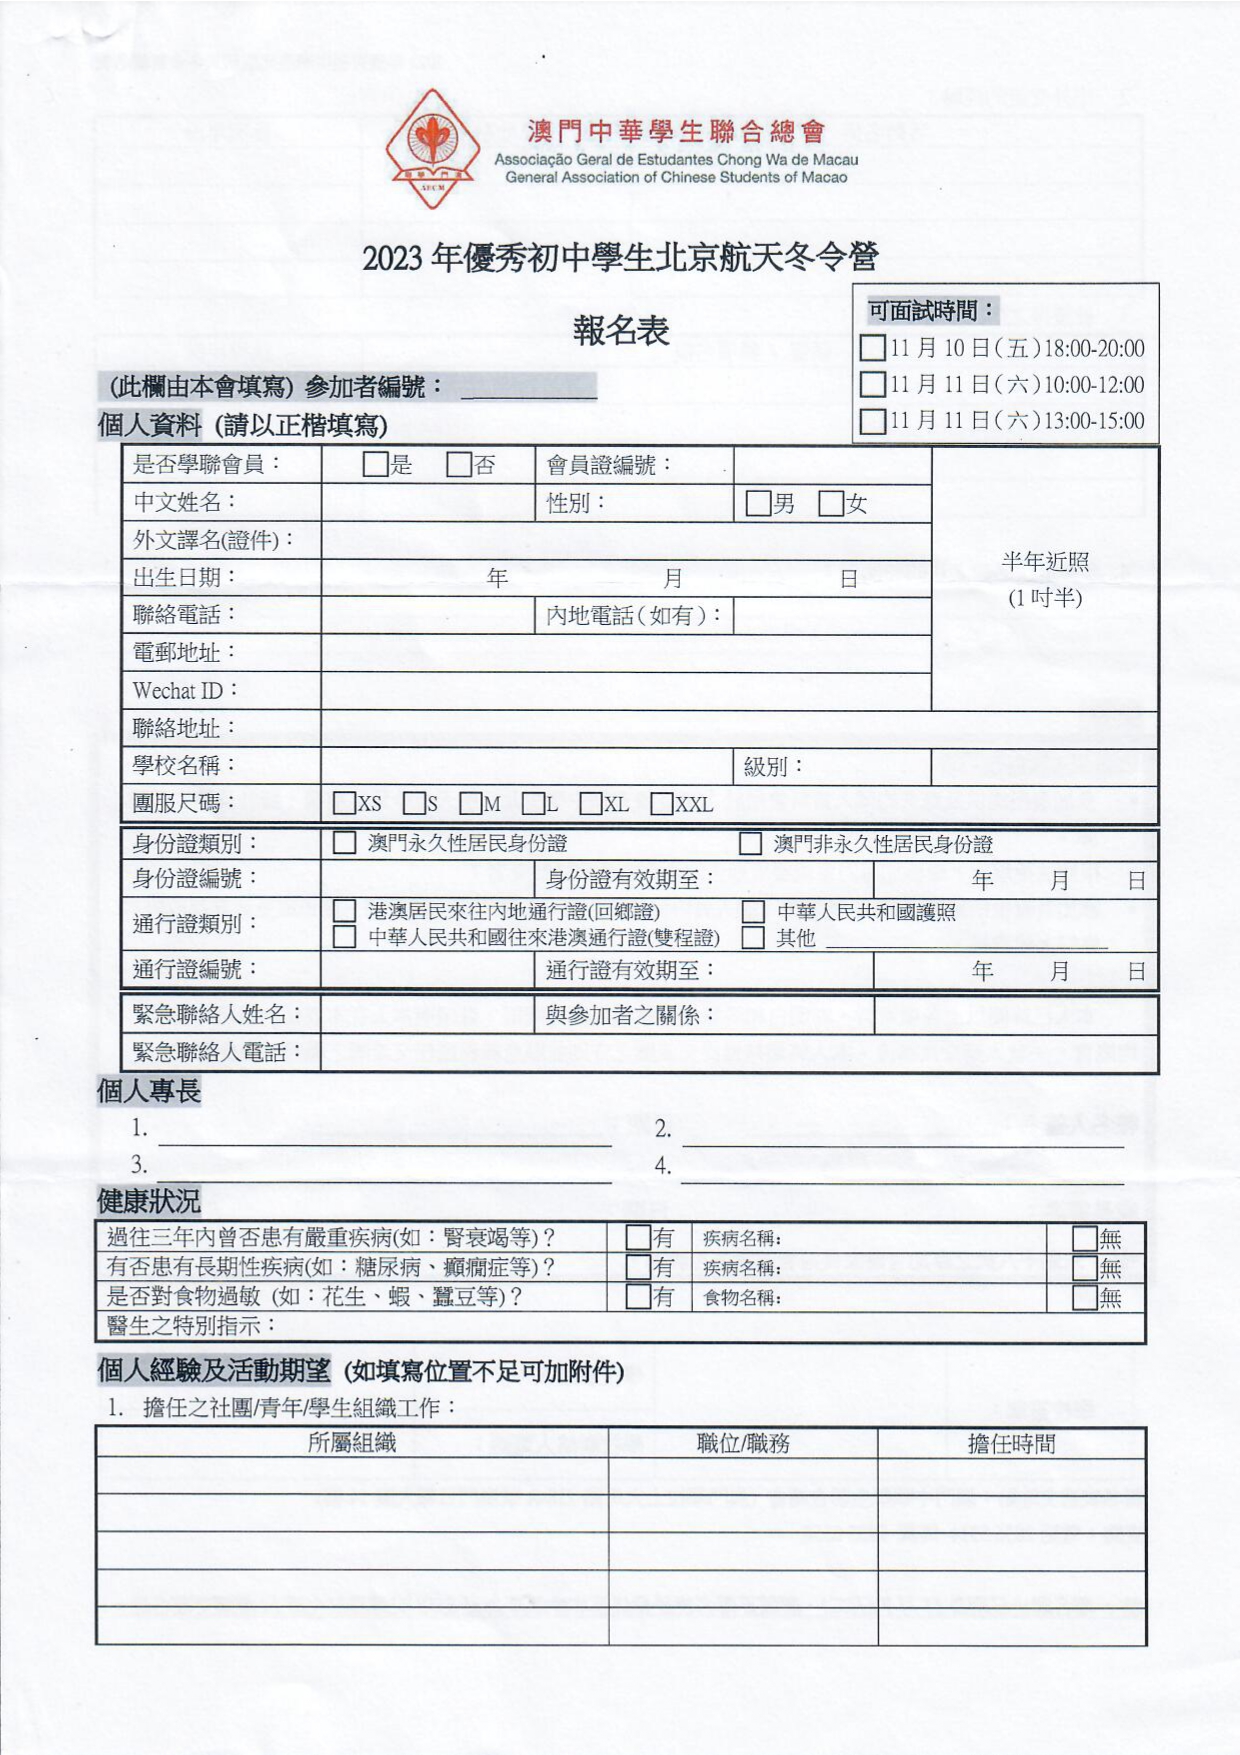 2023年優秀初中學生北京航天冬令營 報名表1.jpg